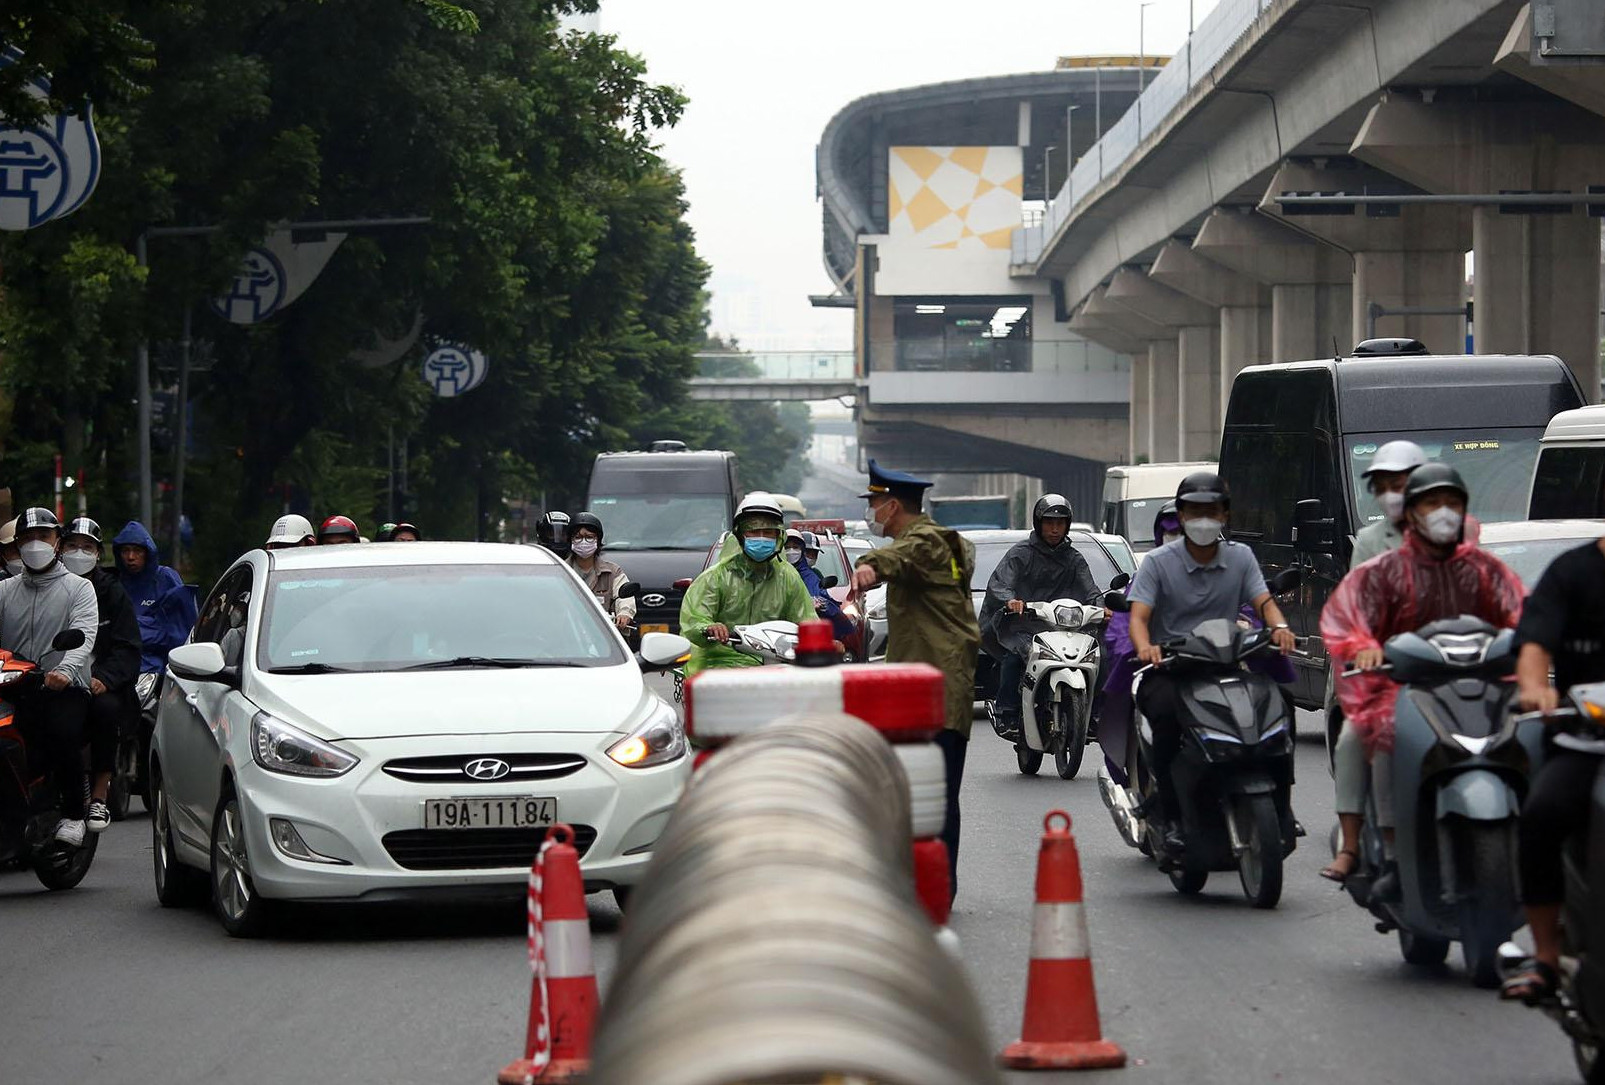 8 ‘lô cốt’ trên đường Nguyễn Trãi: Sở GTVT tính chỉnh phương án tách làn ô tô, xe máy